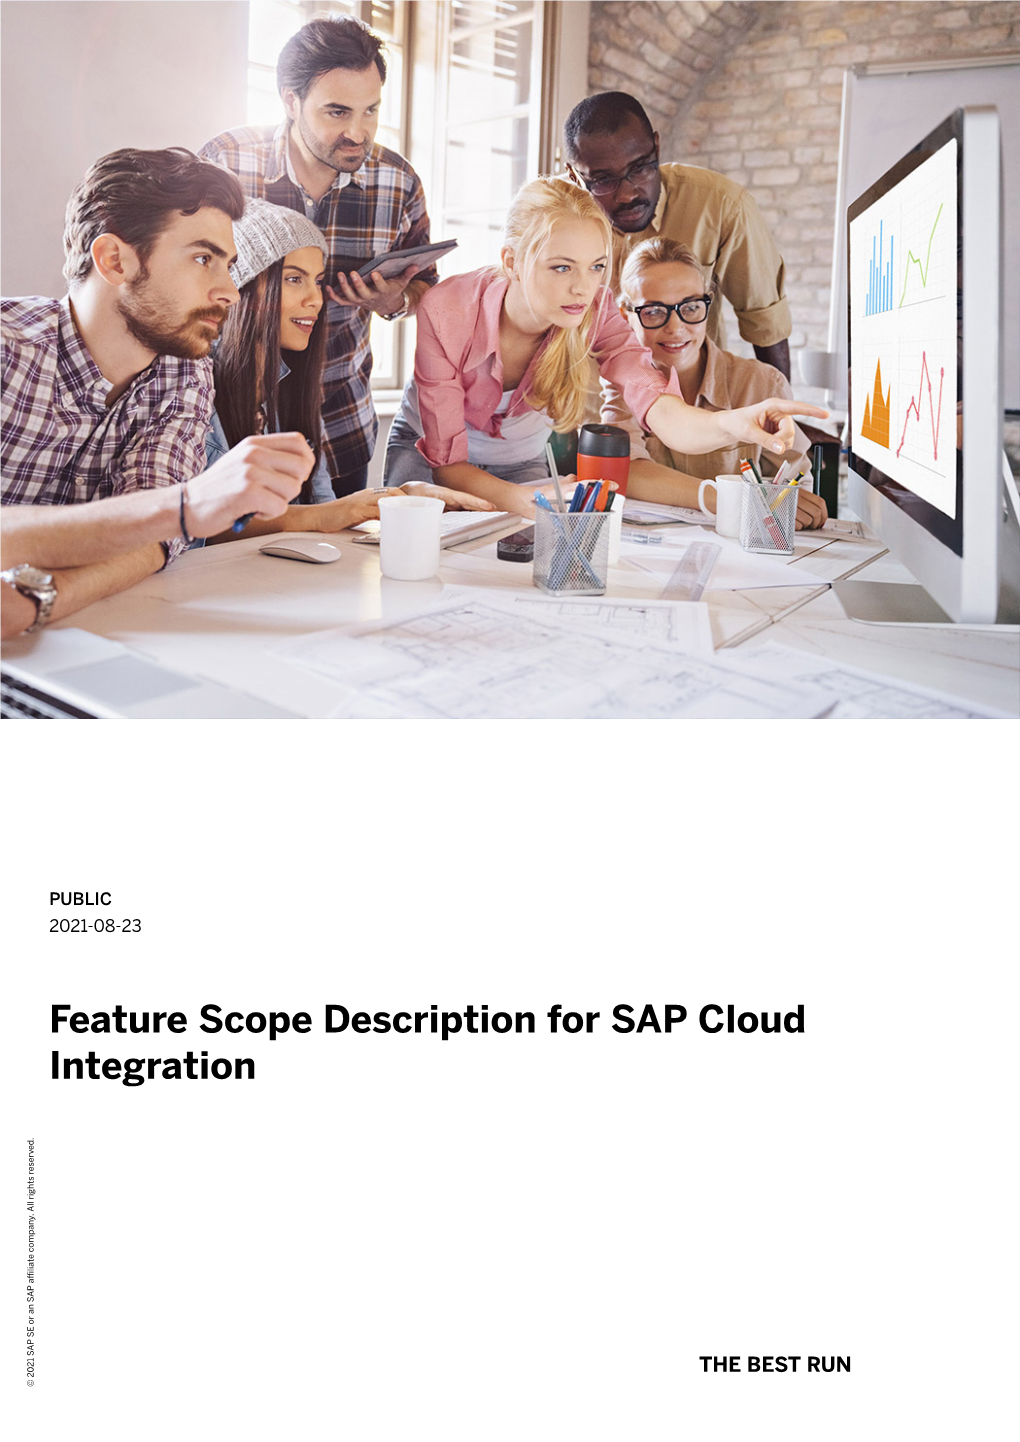 Feature Scope Description for SAP Cloud Integration Company